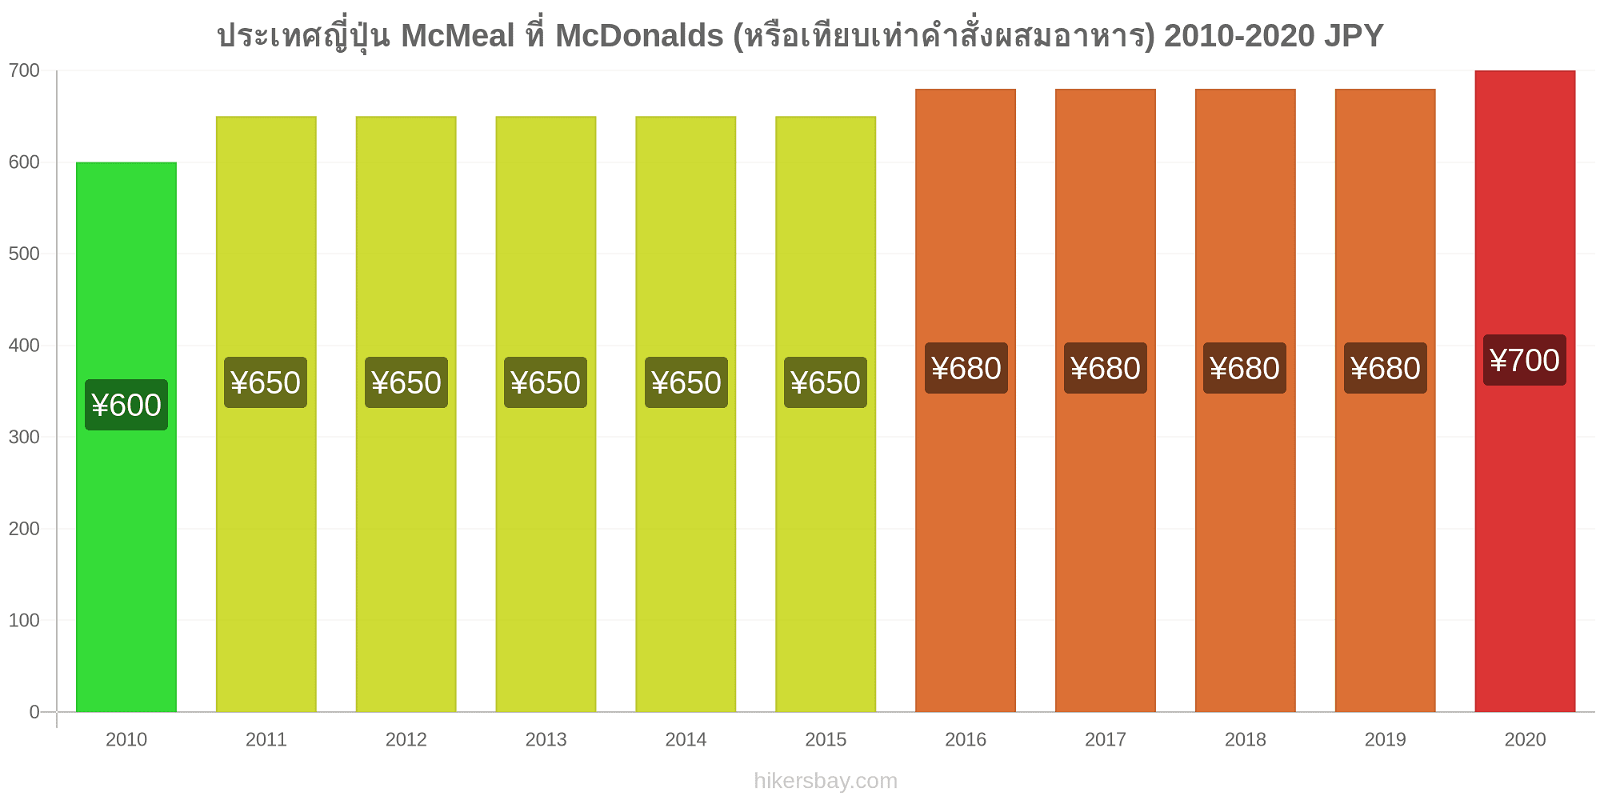 ประเทศญี่ปุ่น การเปลี่ยนแปลงราคา McMeal ที่ McDonalds (หรือเทียบเท่าคำสั่งผสมอาหาร) hikersbay.com